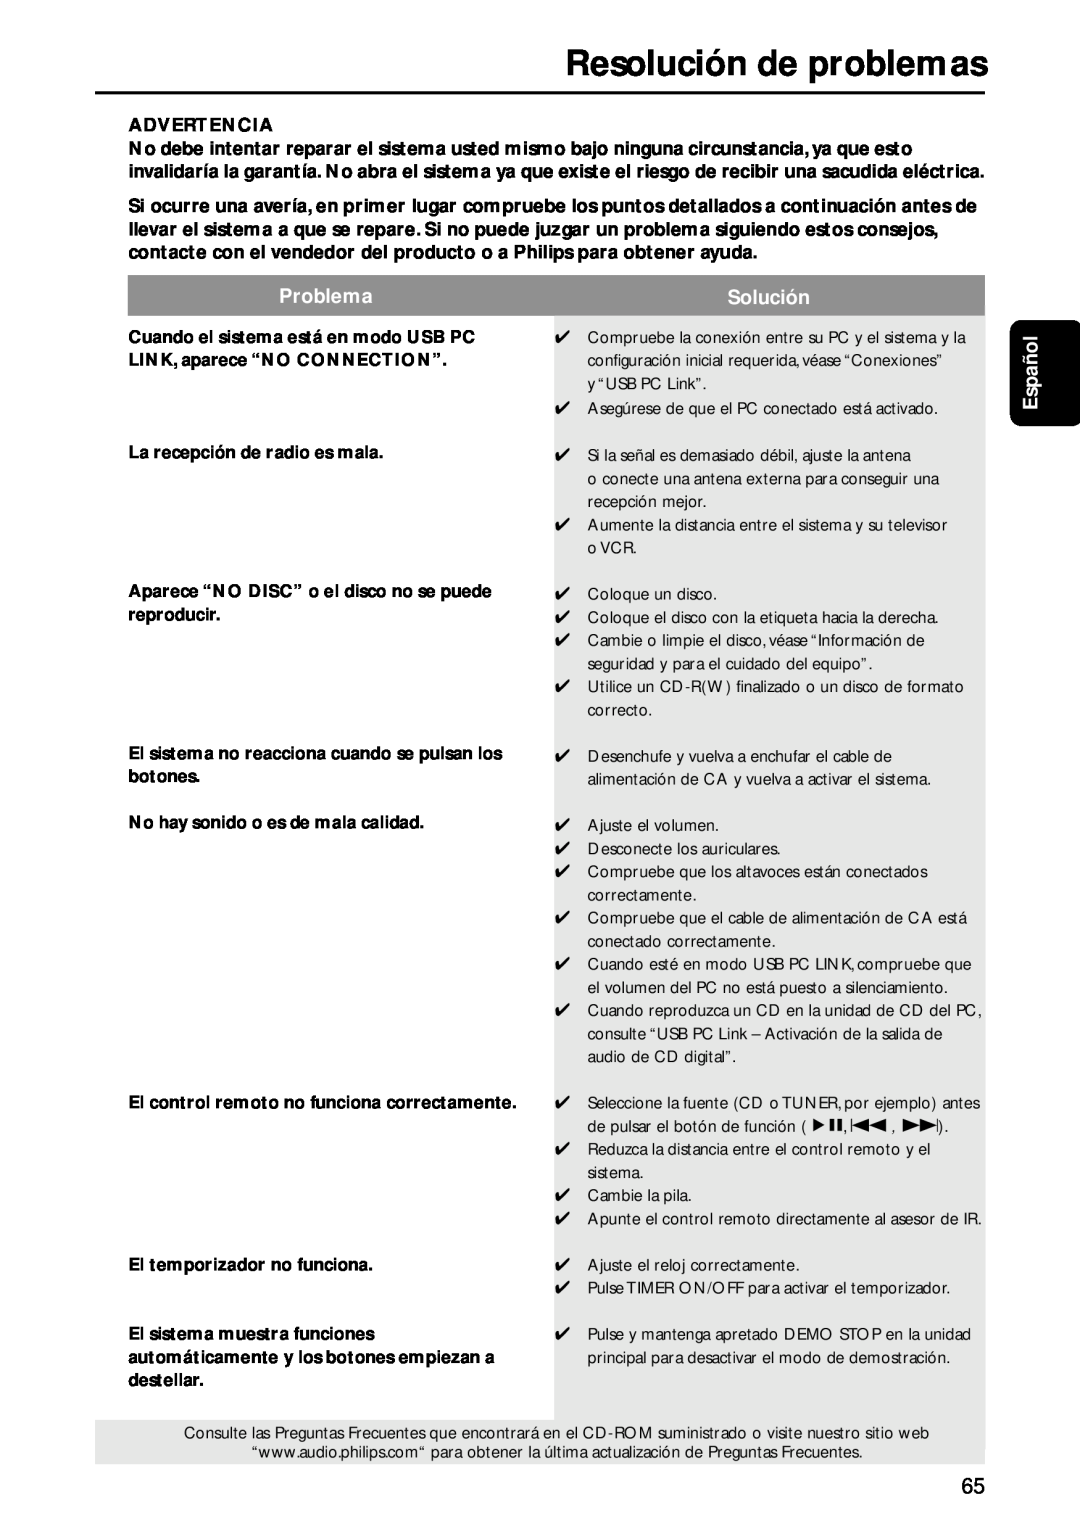 Philips MC-M570 manual Resolución de problemas, Problema, Solución, Español 